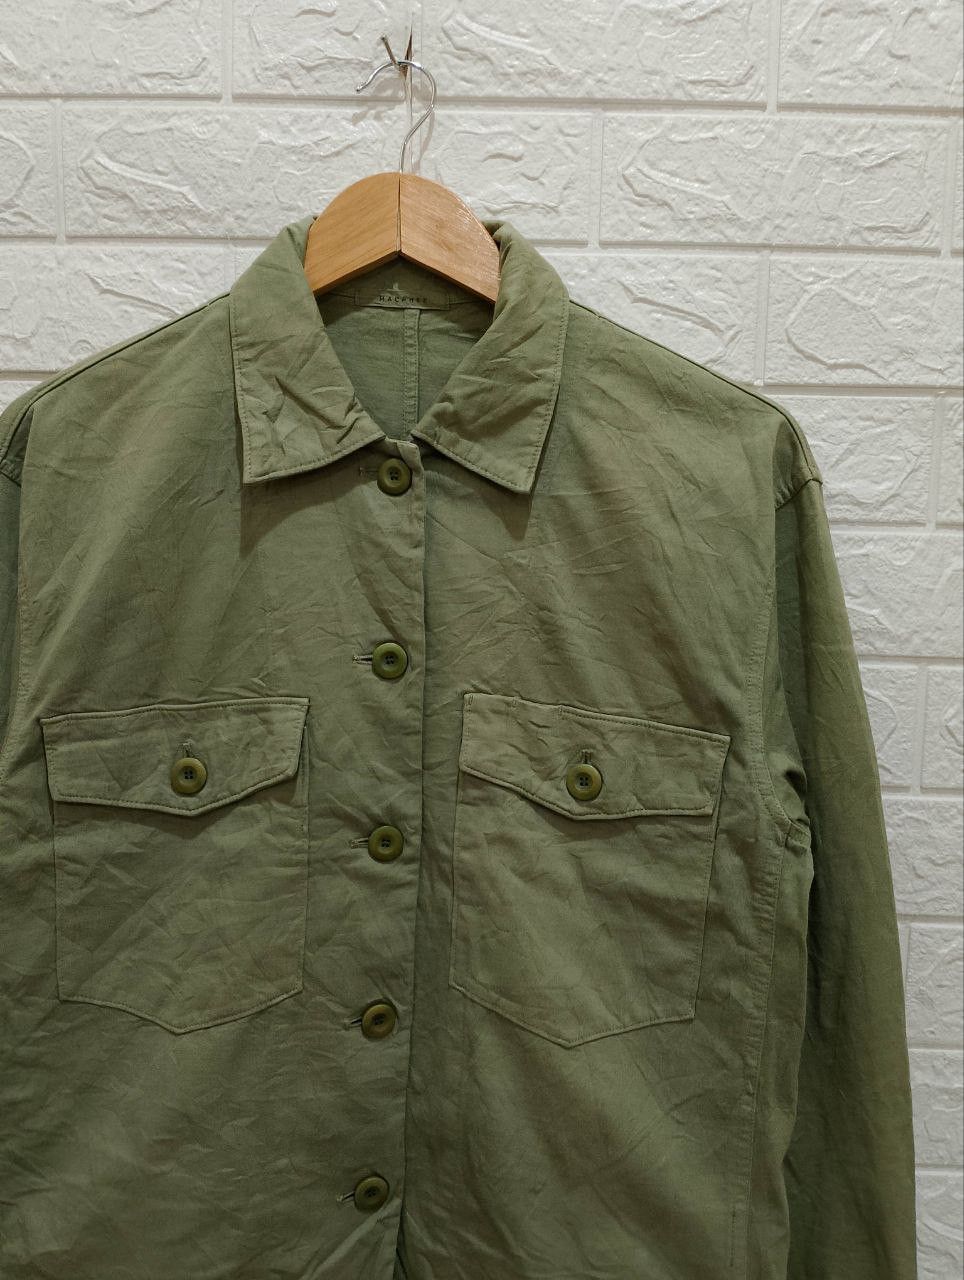 Archival Clothing - Macphee Military OG-107 Design Long Sleeve Shirt Jacket - 6